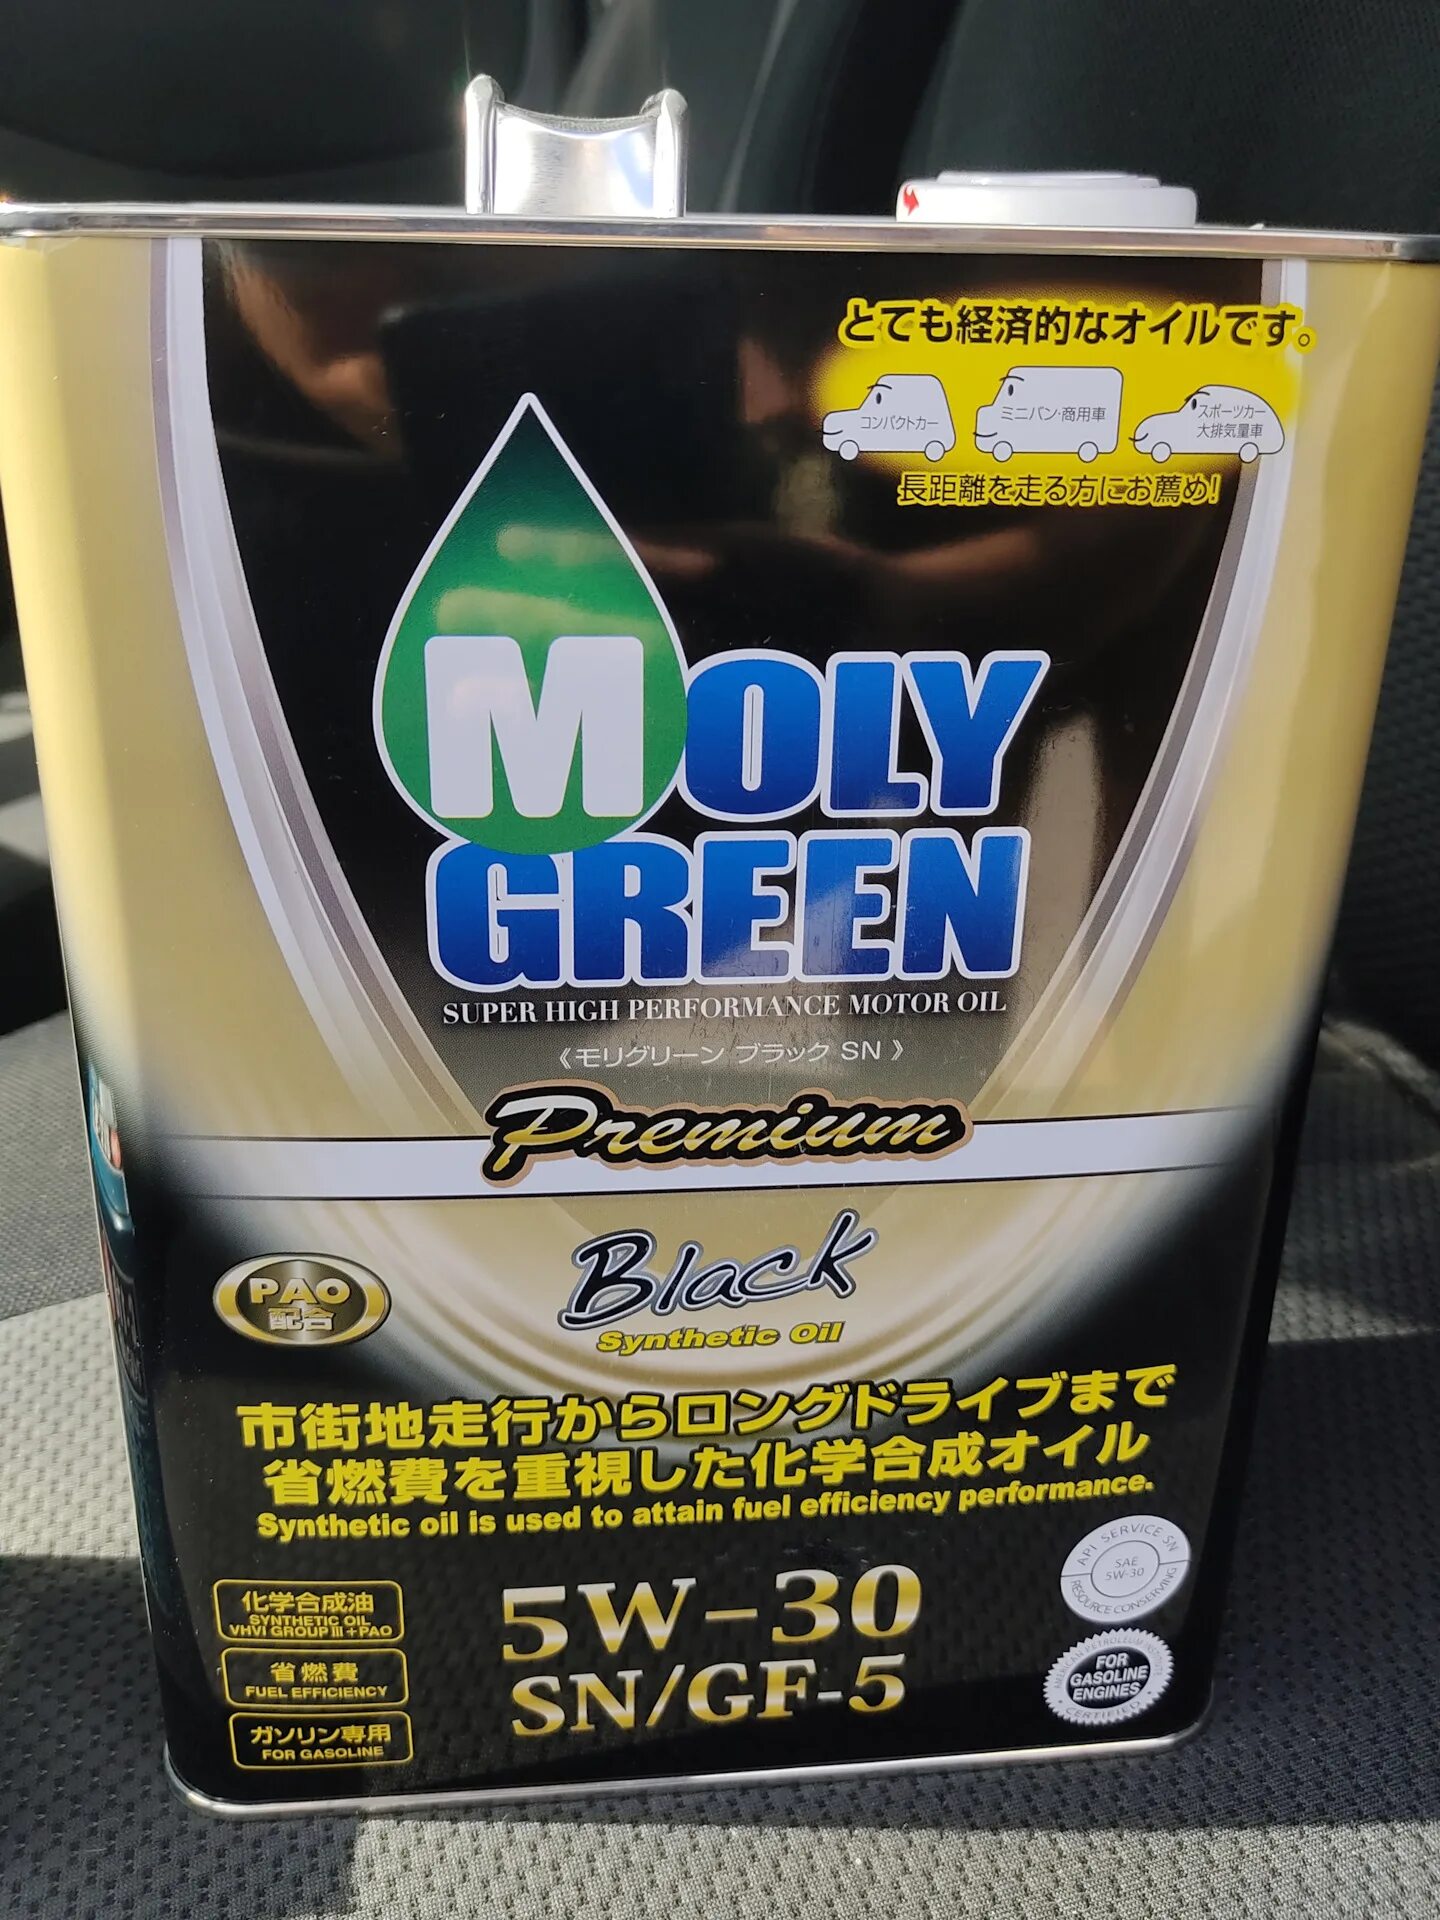 Отзыв масло moly green. Моторное масло Moly Green 5w30. Moly Green 5w30 Premium. Moly Green 5w30 Premium Black. Моли Грин премиум 5 30.